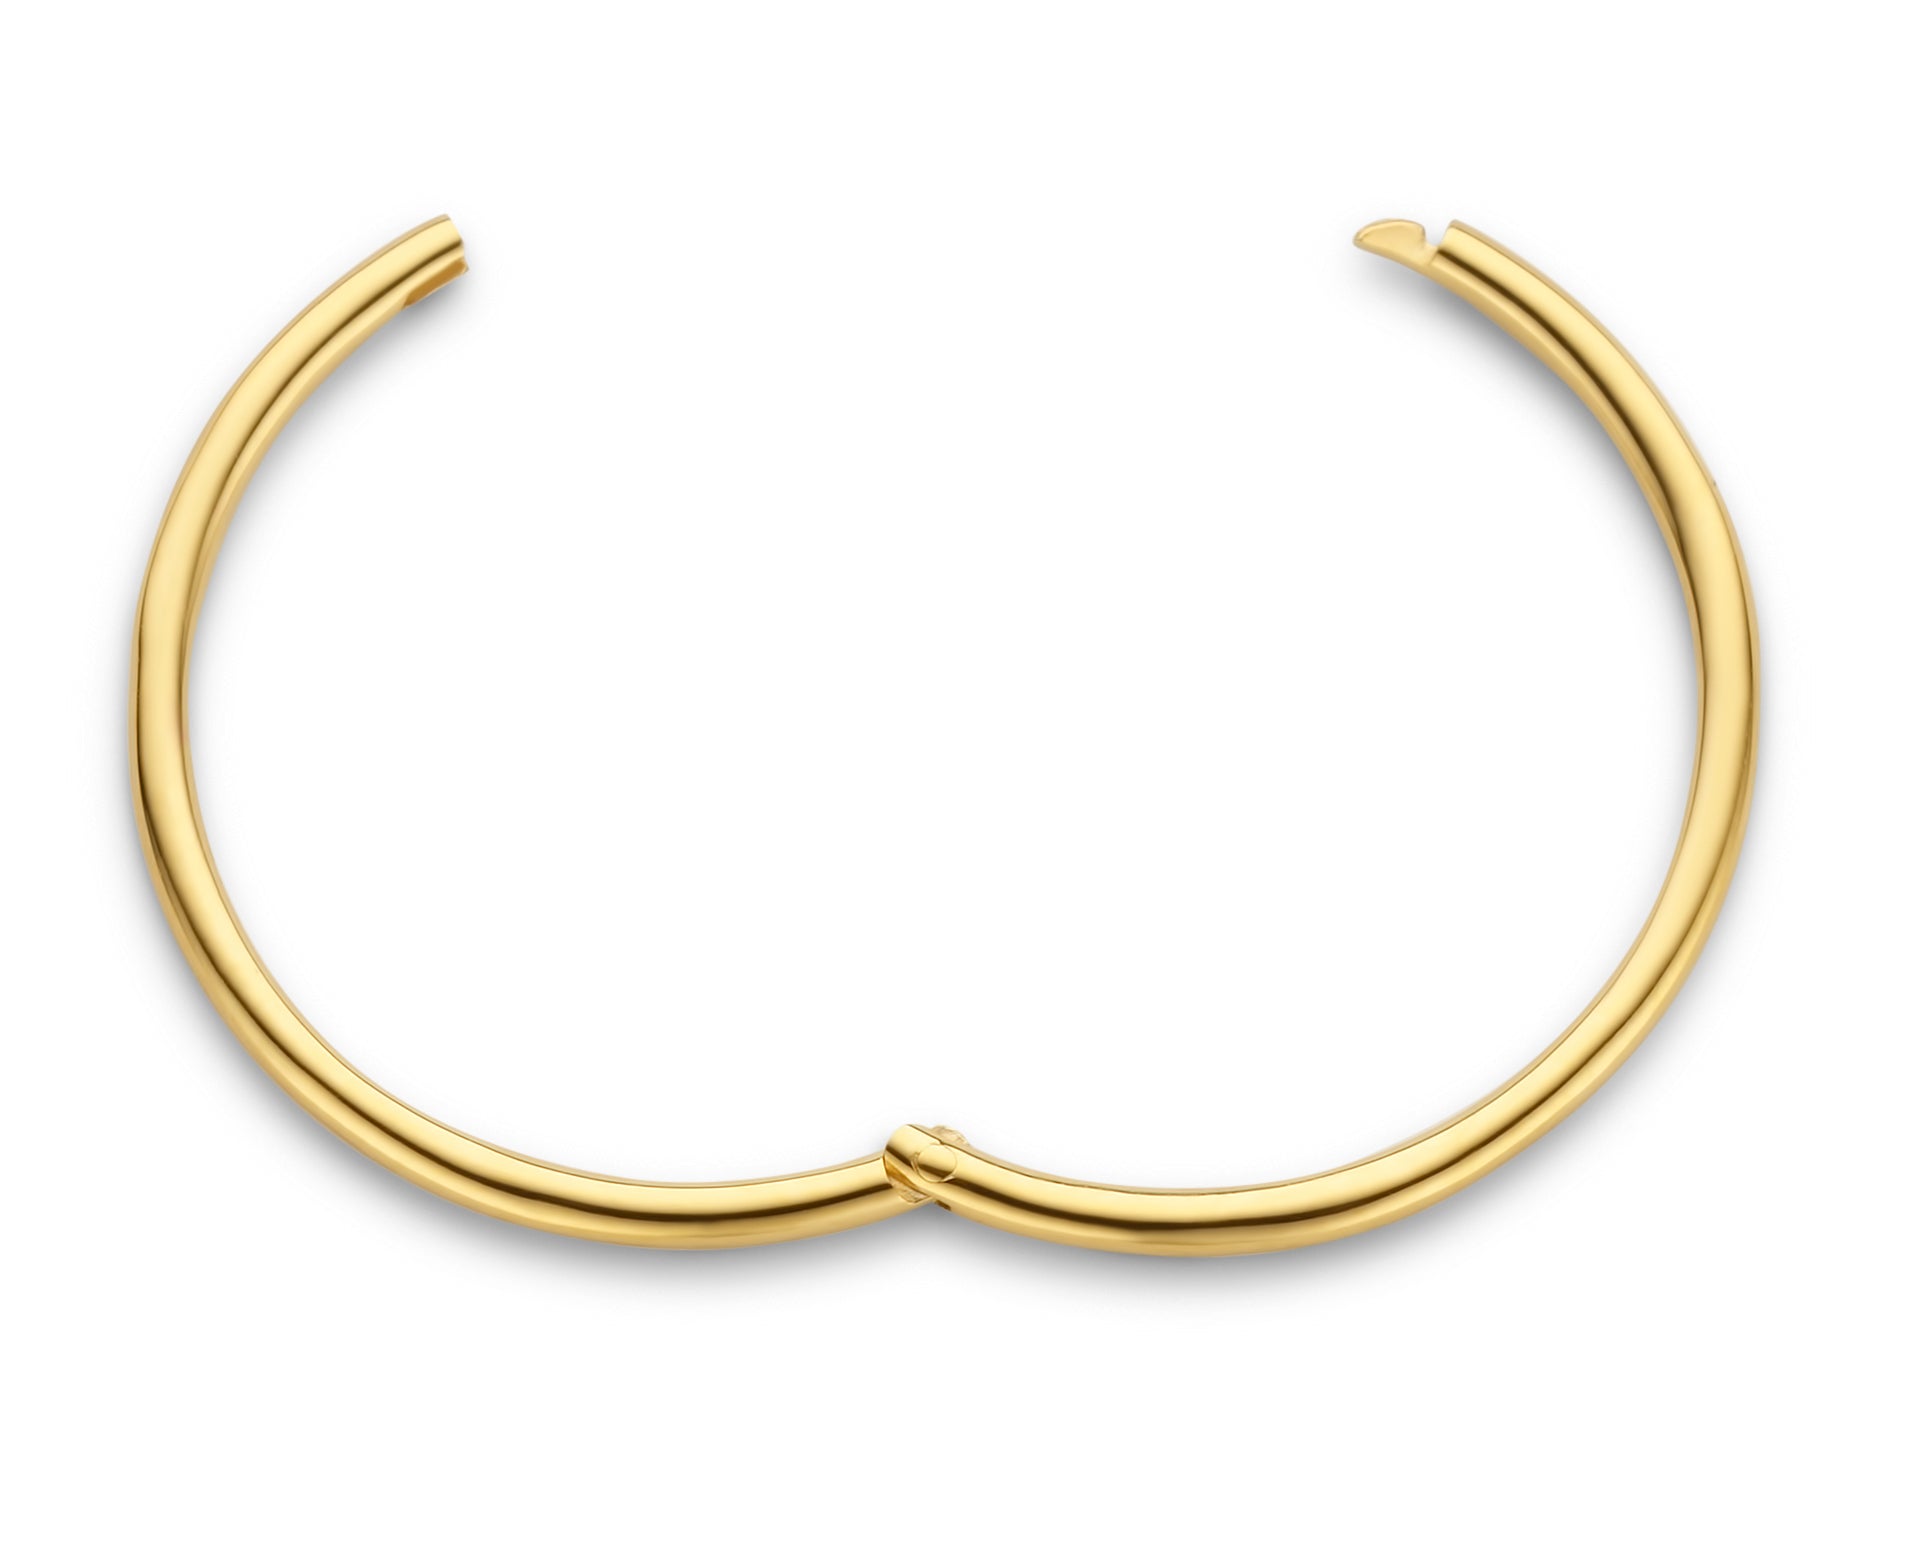 Imagine hoop øreringe uden vedhæng - medium diameter 2 cm - 14 kt. guld-1